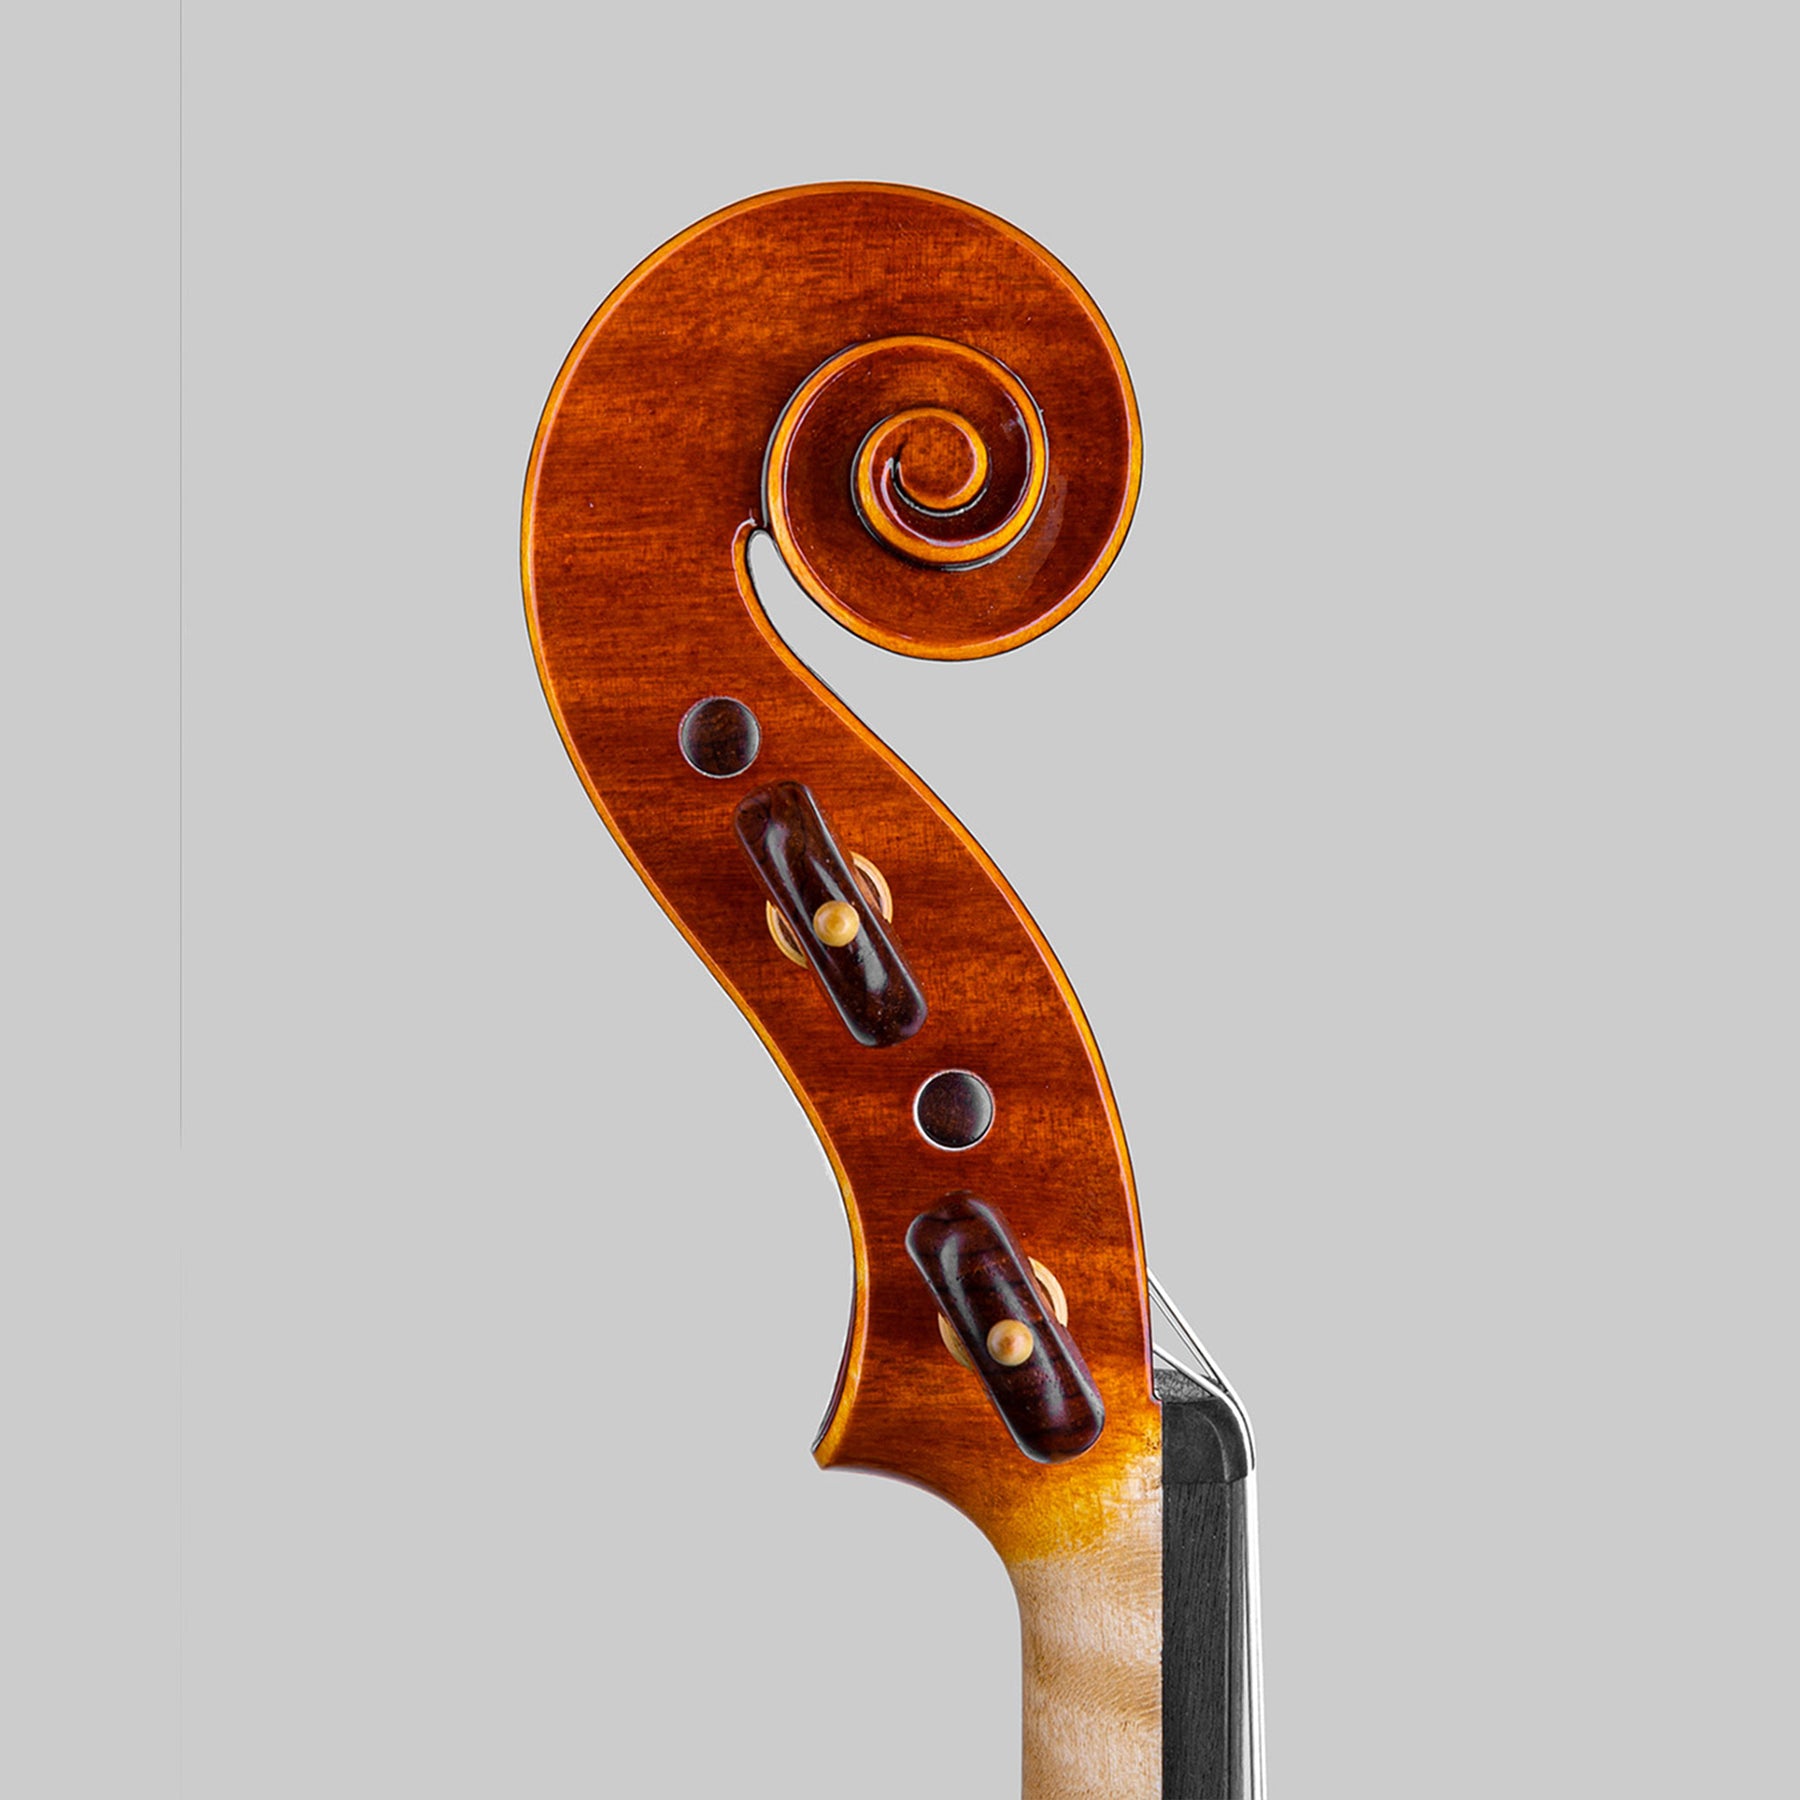 Marco Cargnelutti "Il Toscano" 2021 Violin